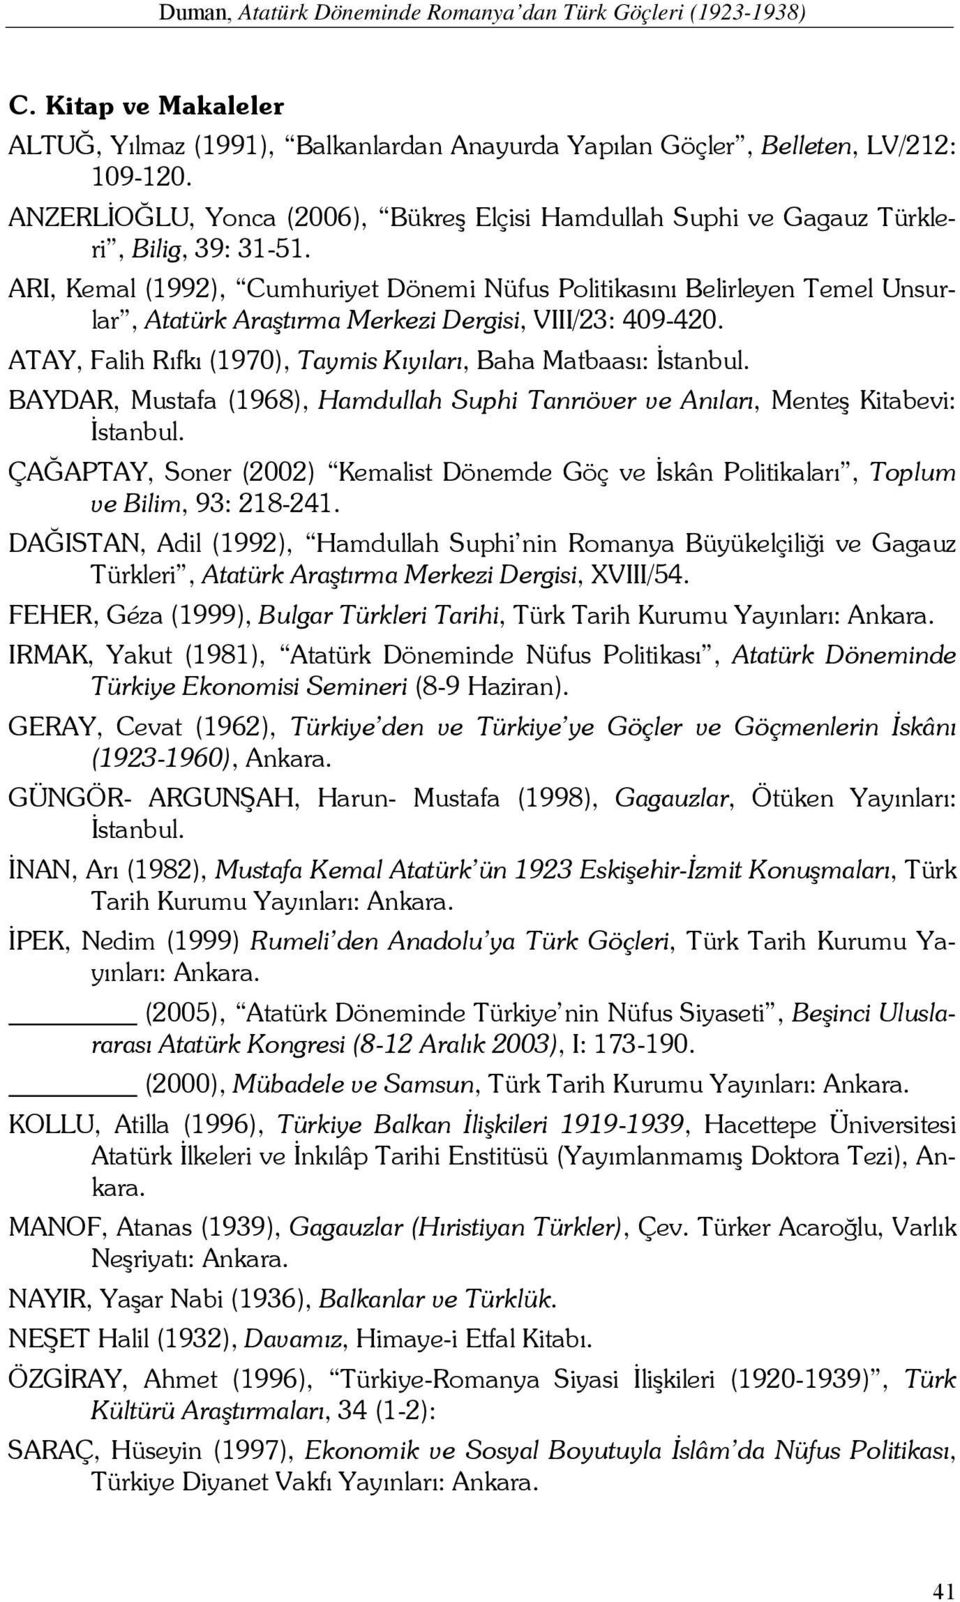 ARI, Kemal (1992), Cumhuriyet Dönemi Nüfus Politikasını Belirleyen Temel Unsurlar, Atatürk Araştırma Merkezi Dergisi, VIII/23: 409-420.